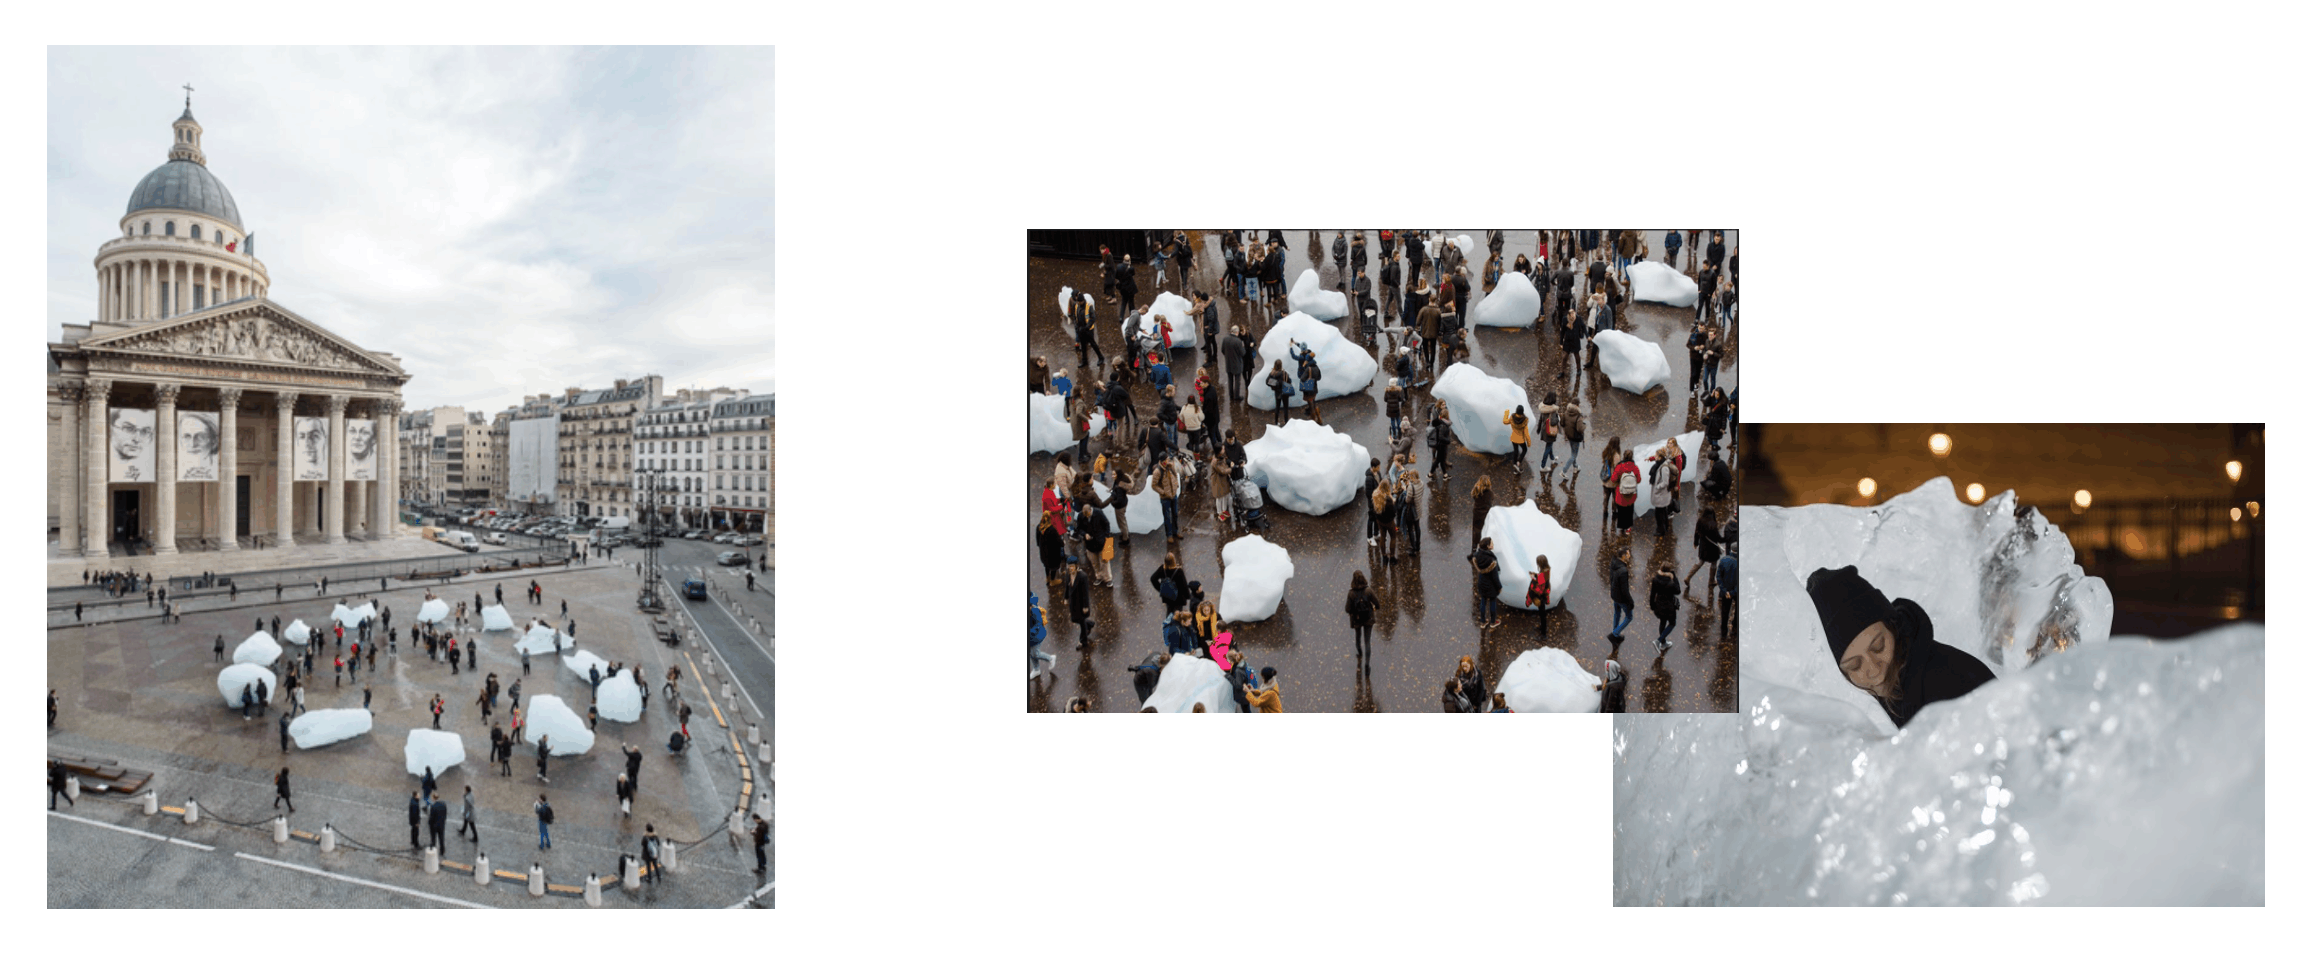 Ice Watch, réalisé par Olafur Eliasson en collaboration avec le géologue Minik Rosing. Décembre 2015 pendant la COP 21 à Paris.